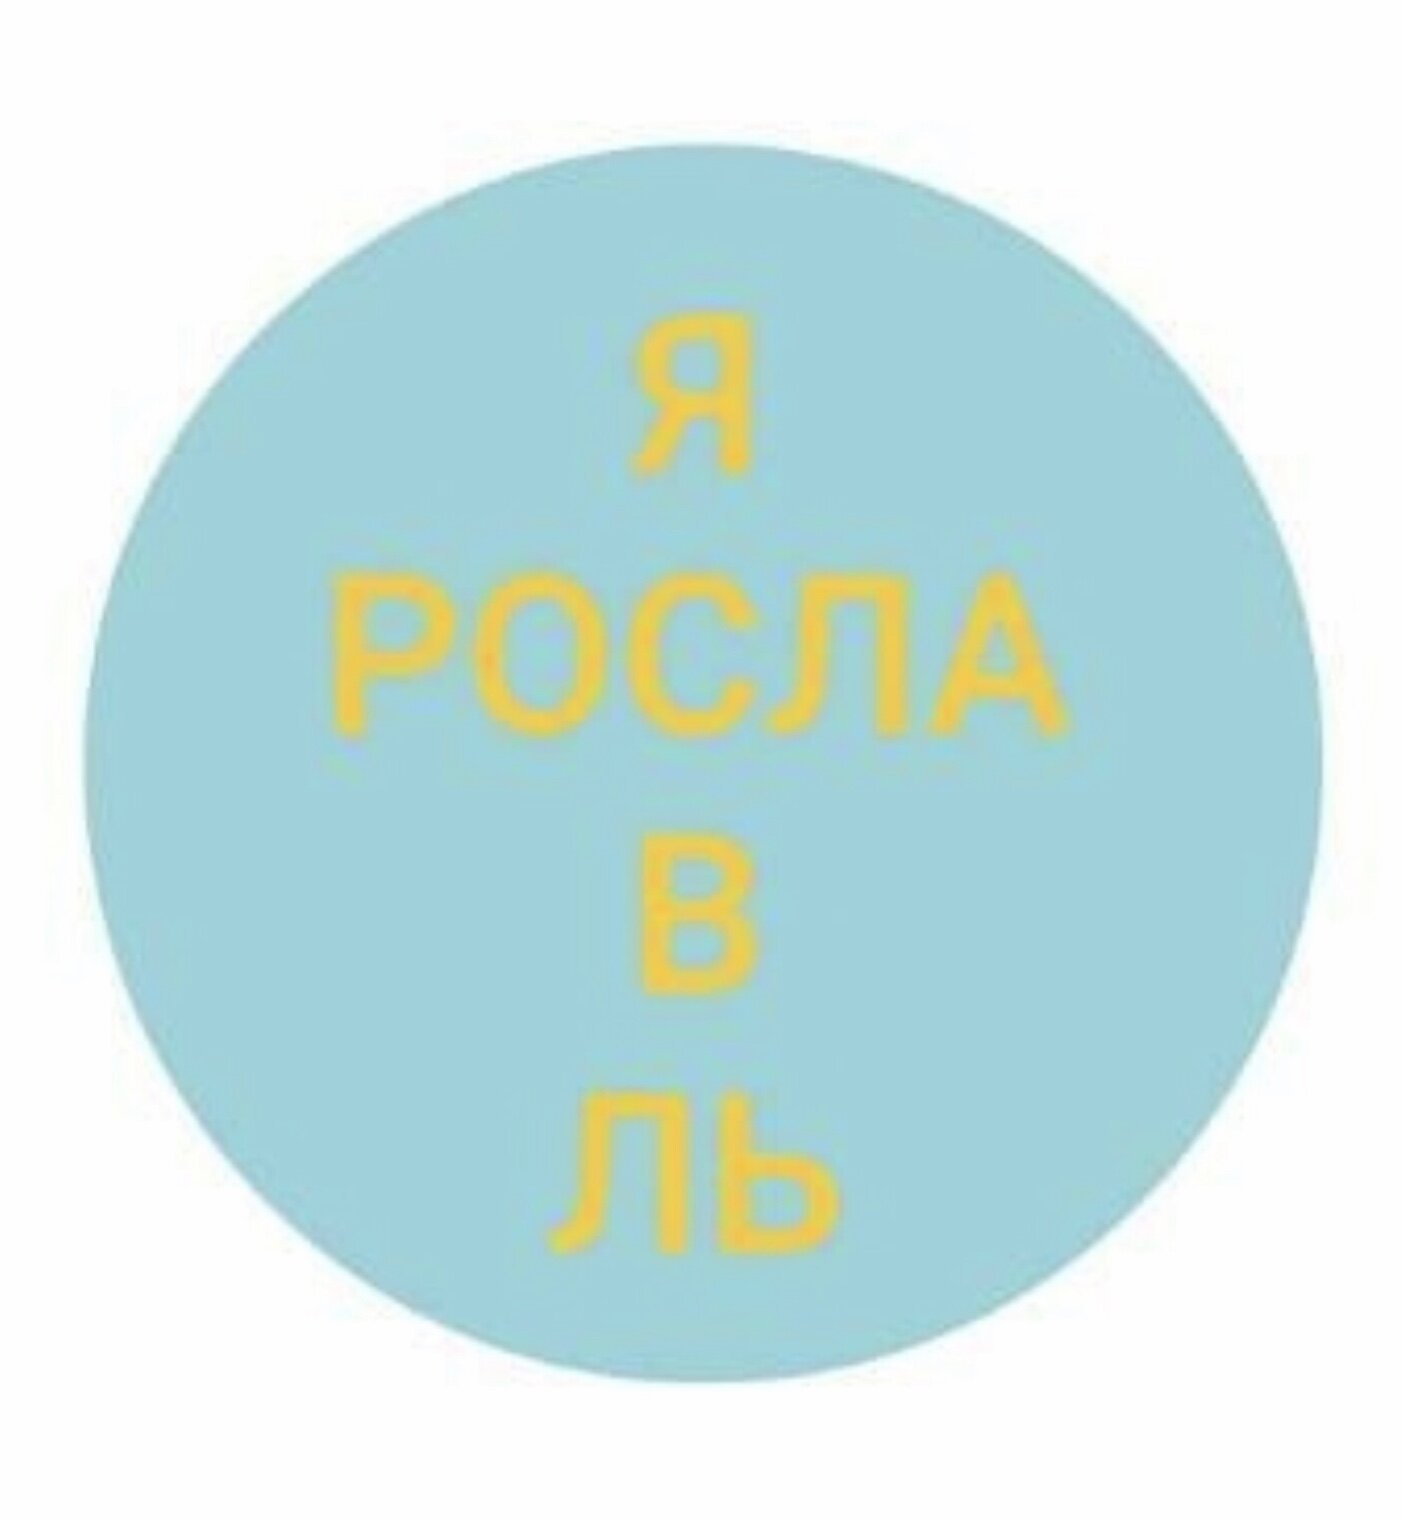 О интернет! Ты - Сила! или как отреагировали люди на новый логотип СПб